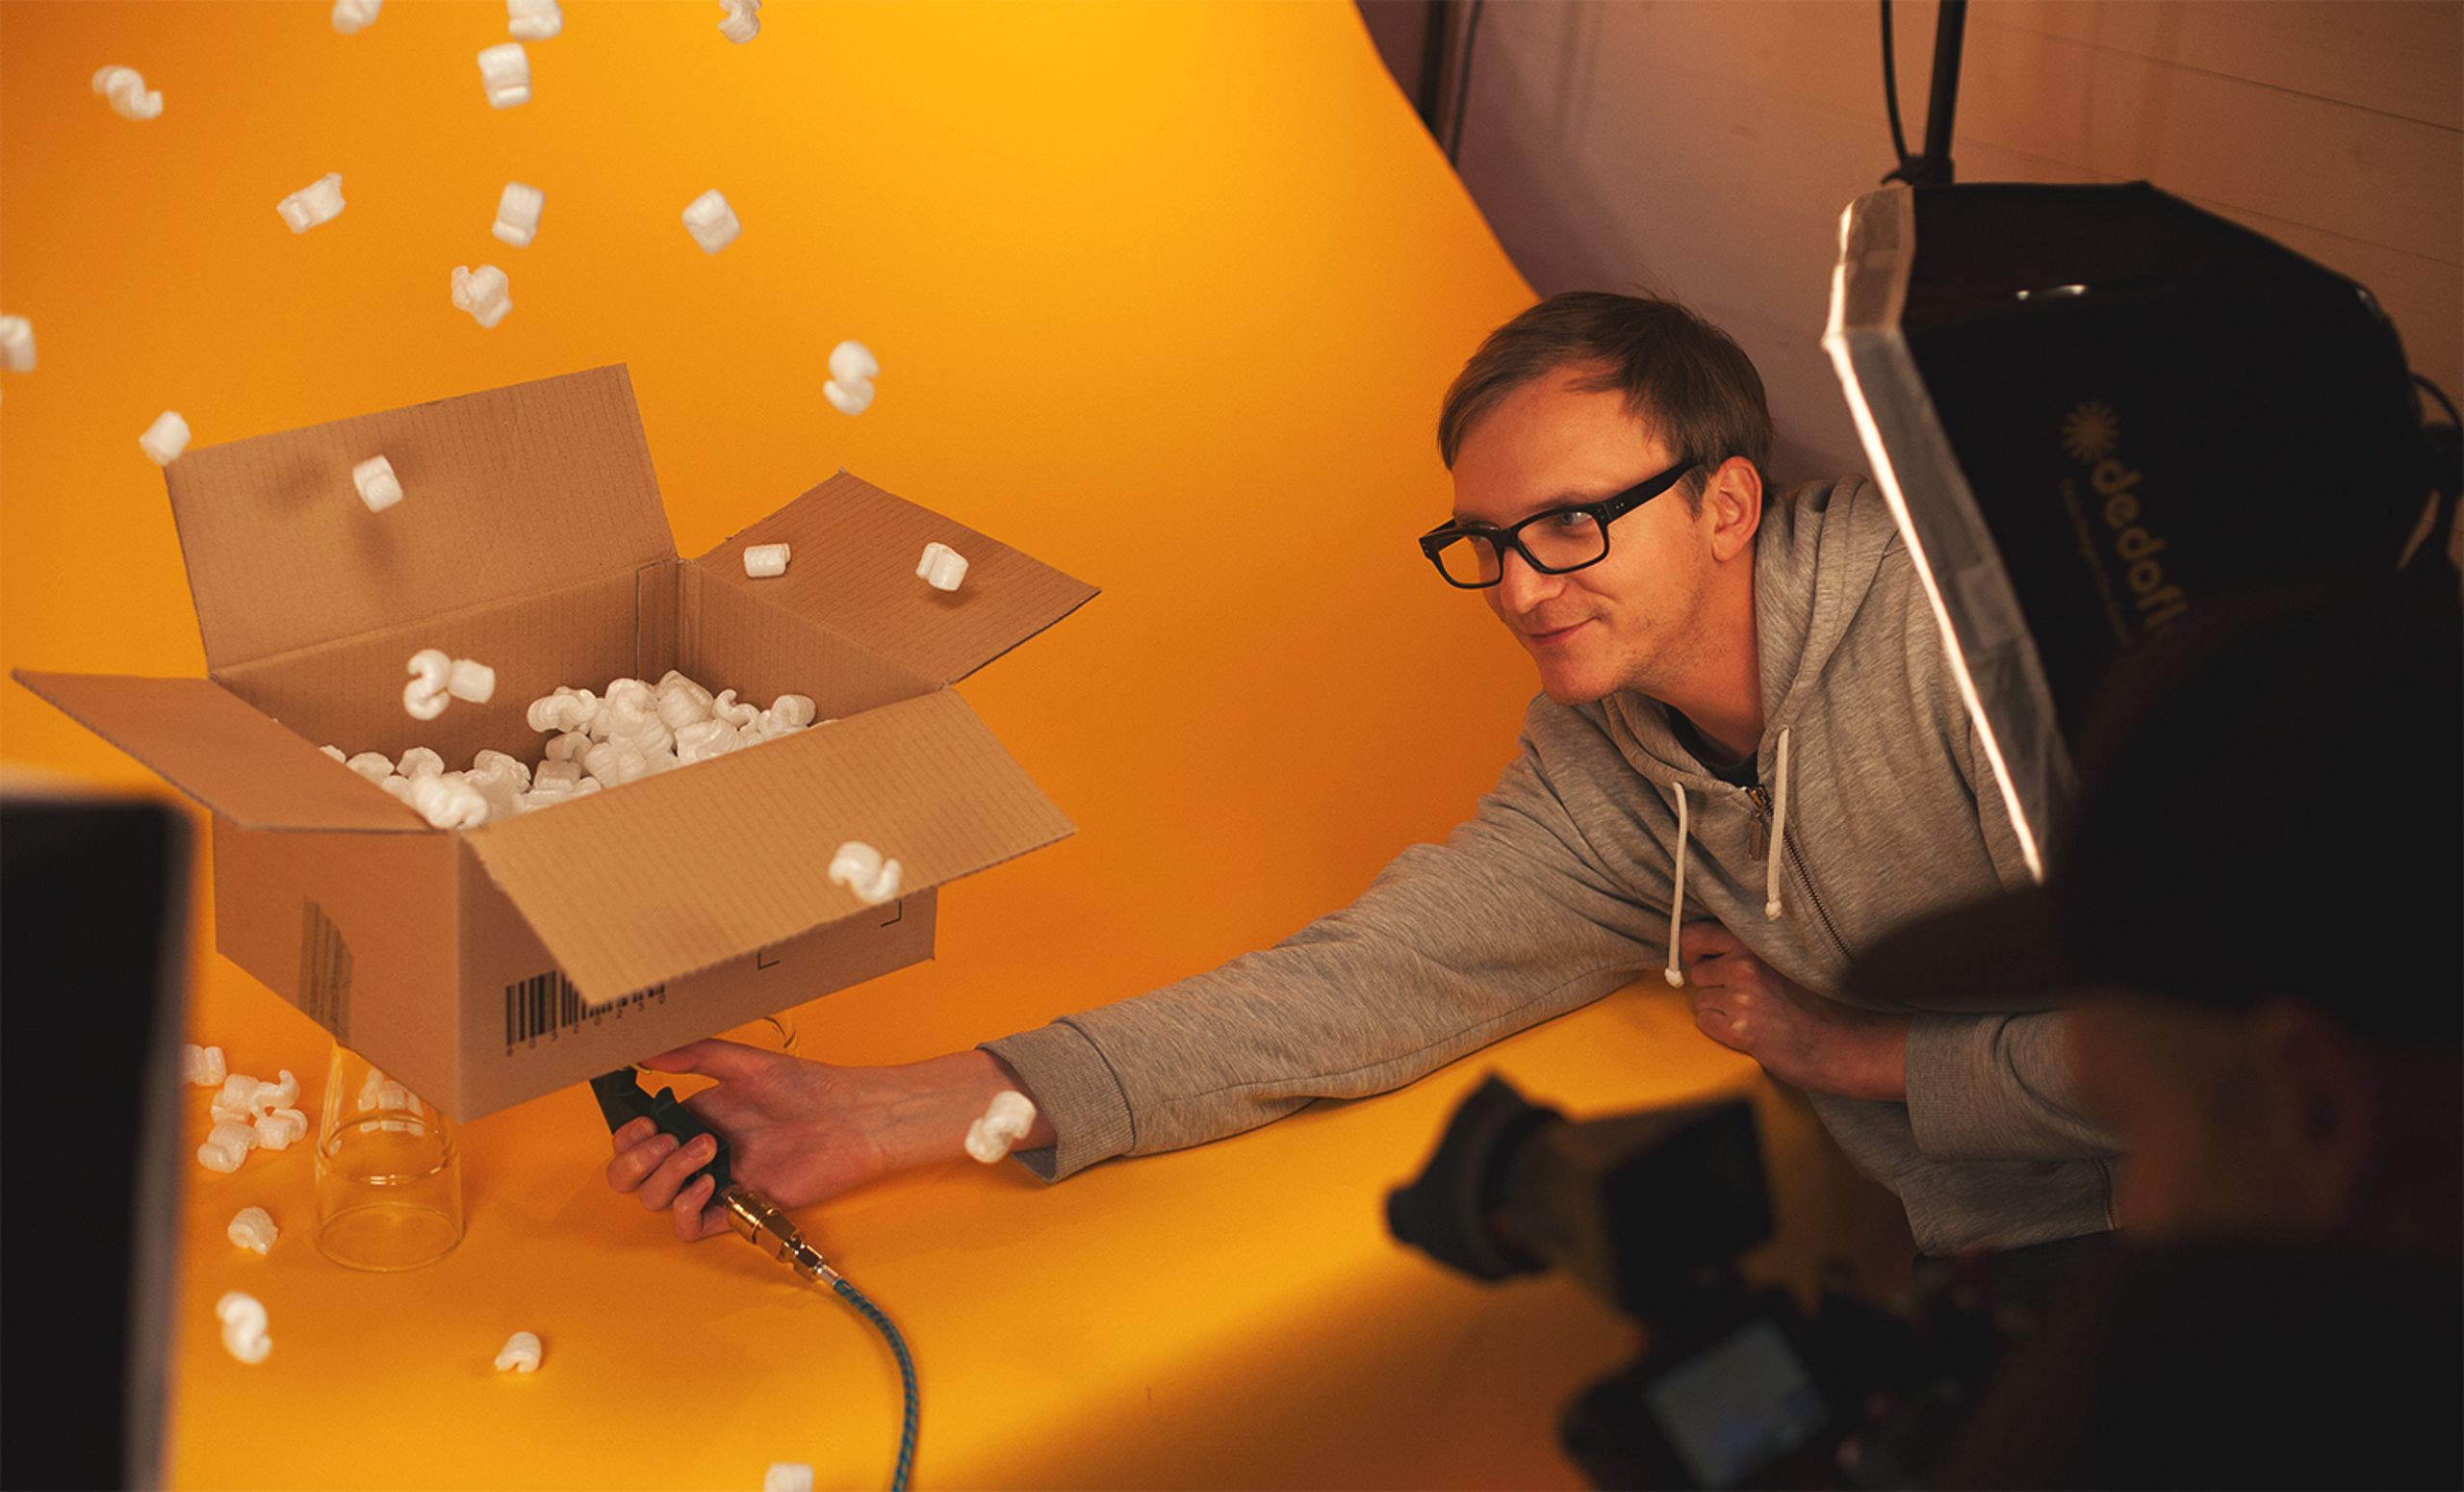 Foto vom Making-Of des vv-Films 2016: Ein offener Pappkarton voller Styropor-Bälle steht vor gelbem Hintergrund auf zwei Gläsern, ein Mitarbeiter reckt sich lächelnd nach dem Karton und hält ein Gerät an dessen Unterseite, sodass die Bälle in die Luft schweben.